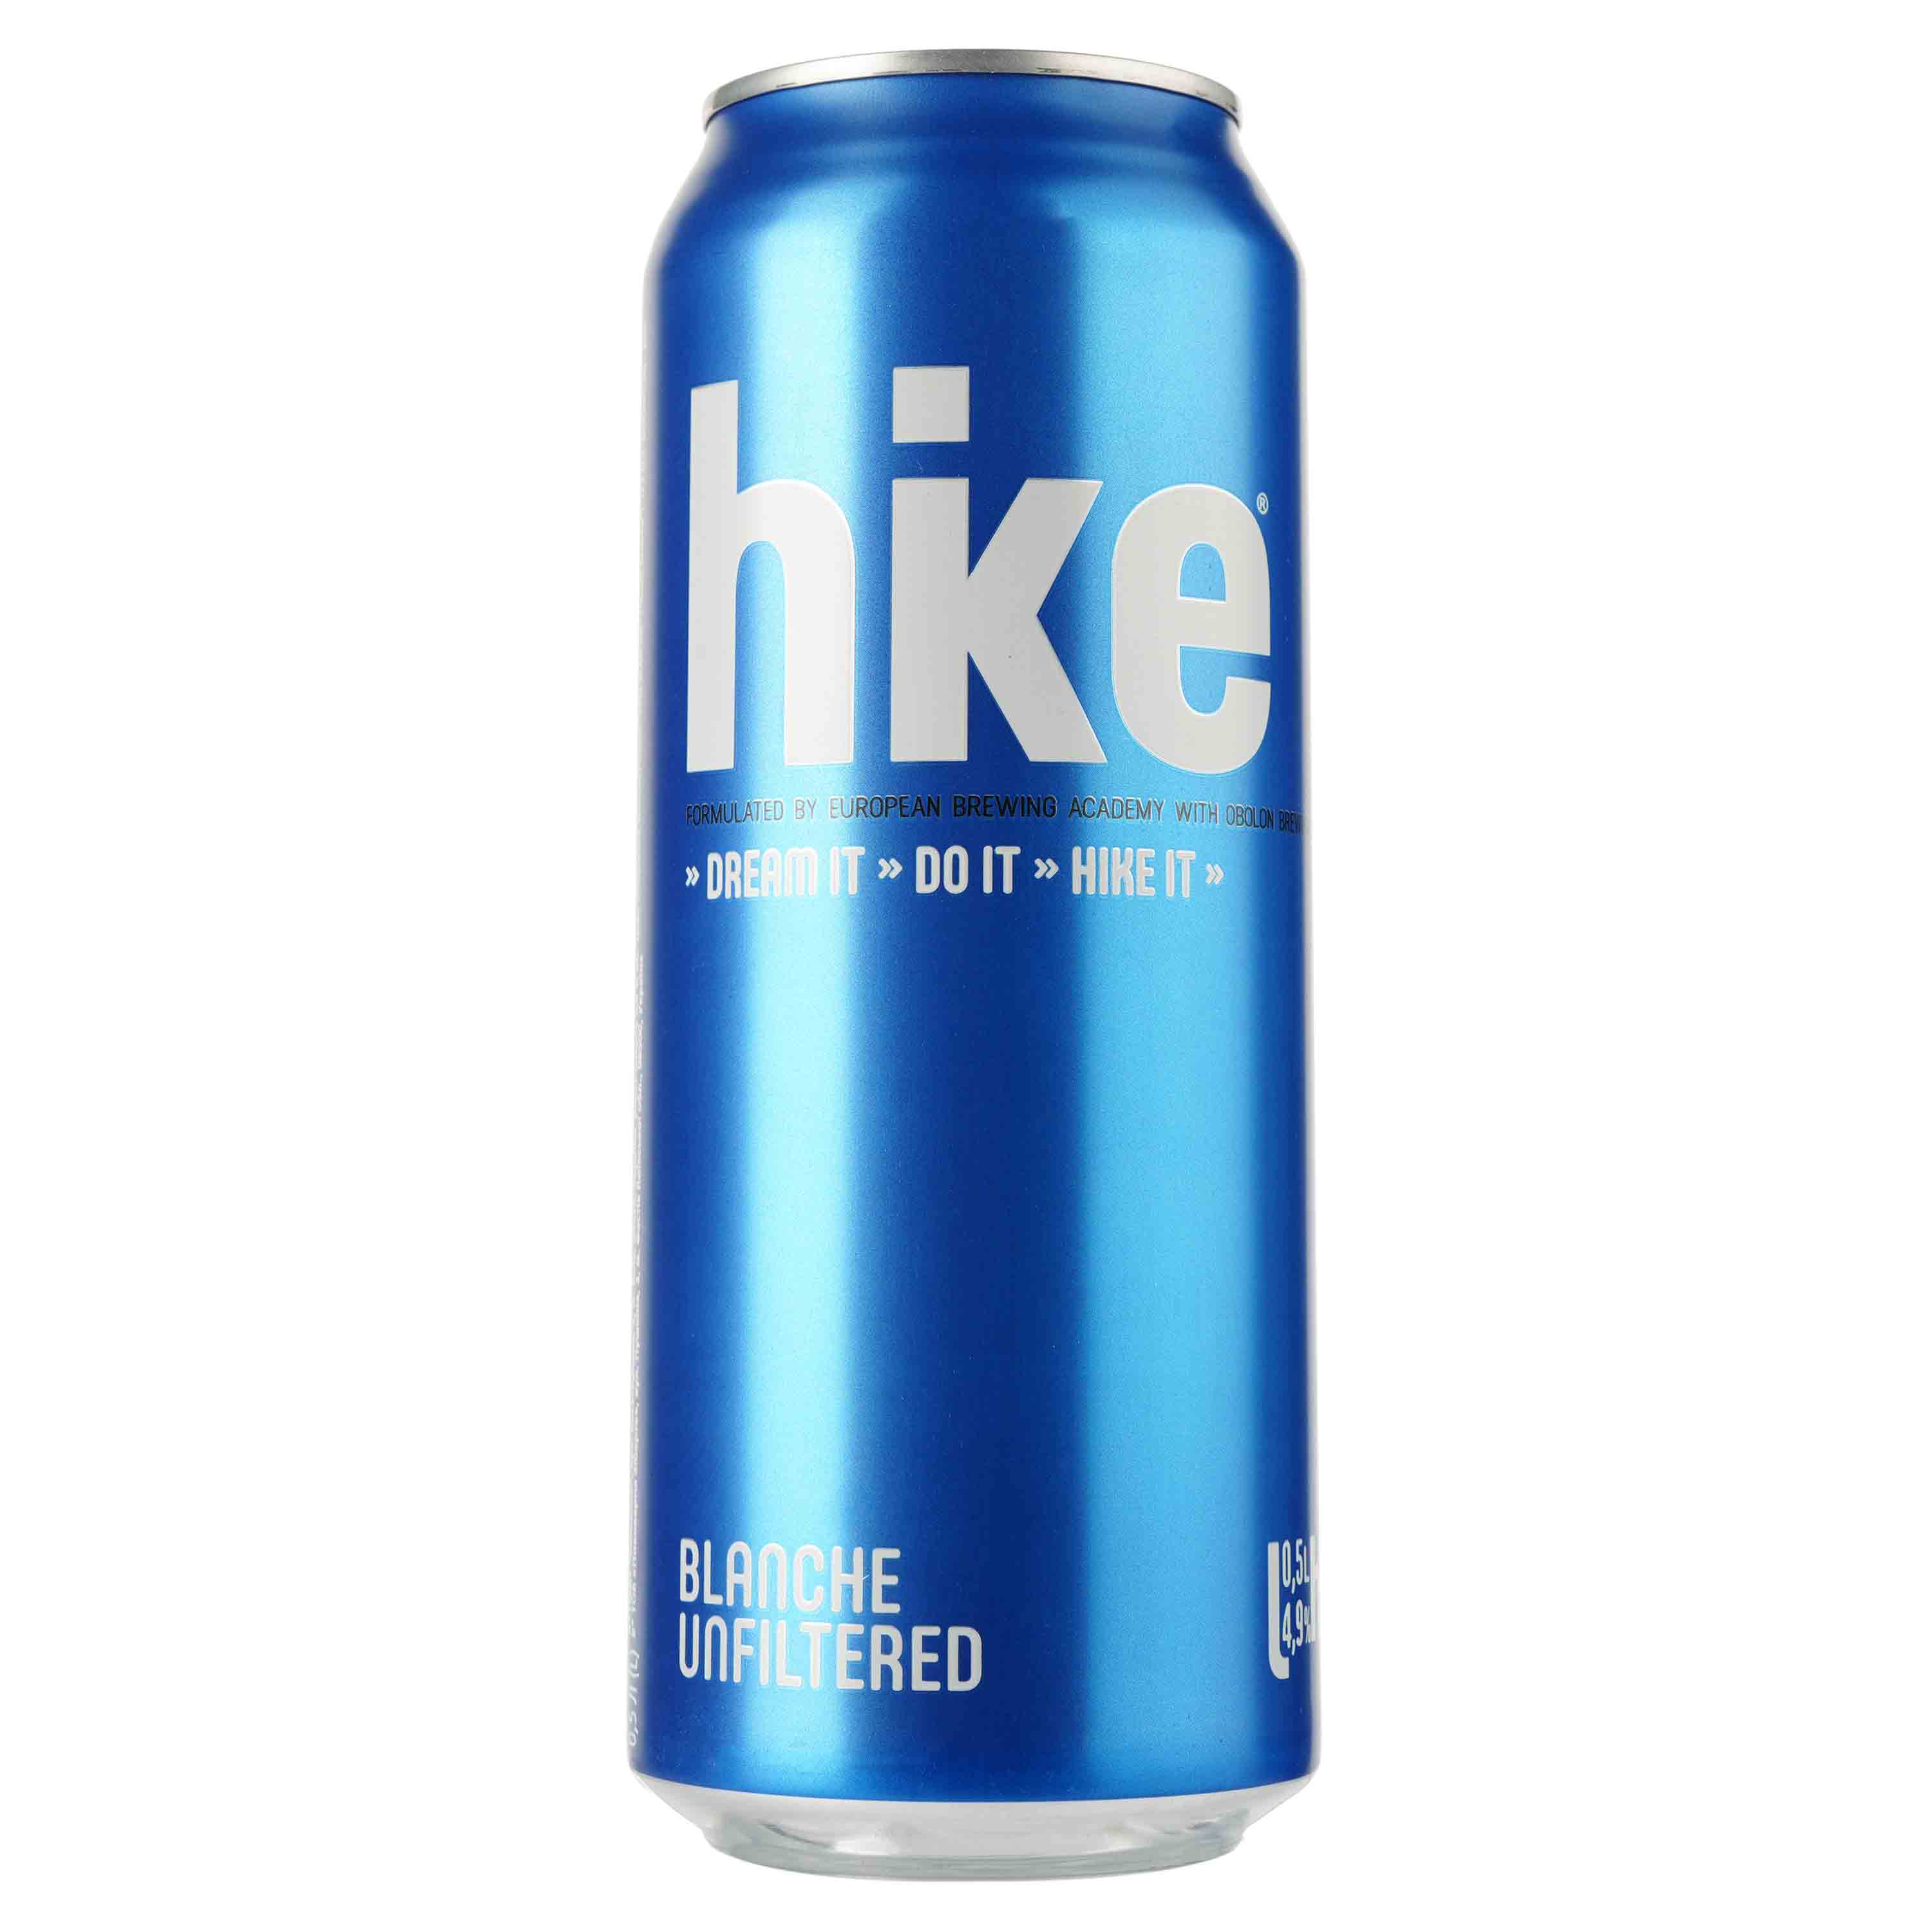 Пиво Hike Blanche, светлое, 4,9%, ж/б, 0,5 л (781555) - фото 1